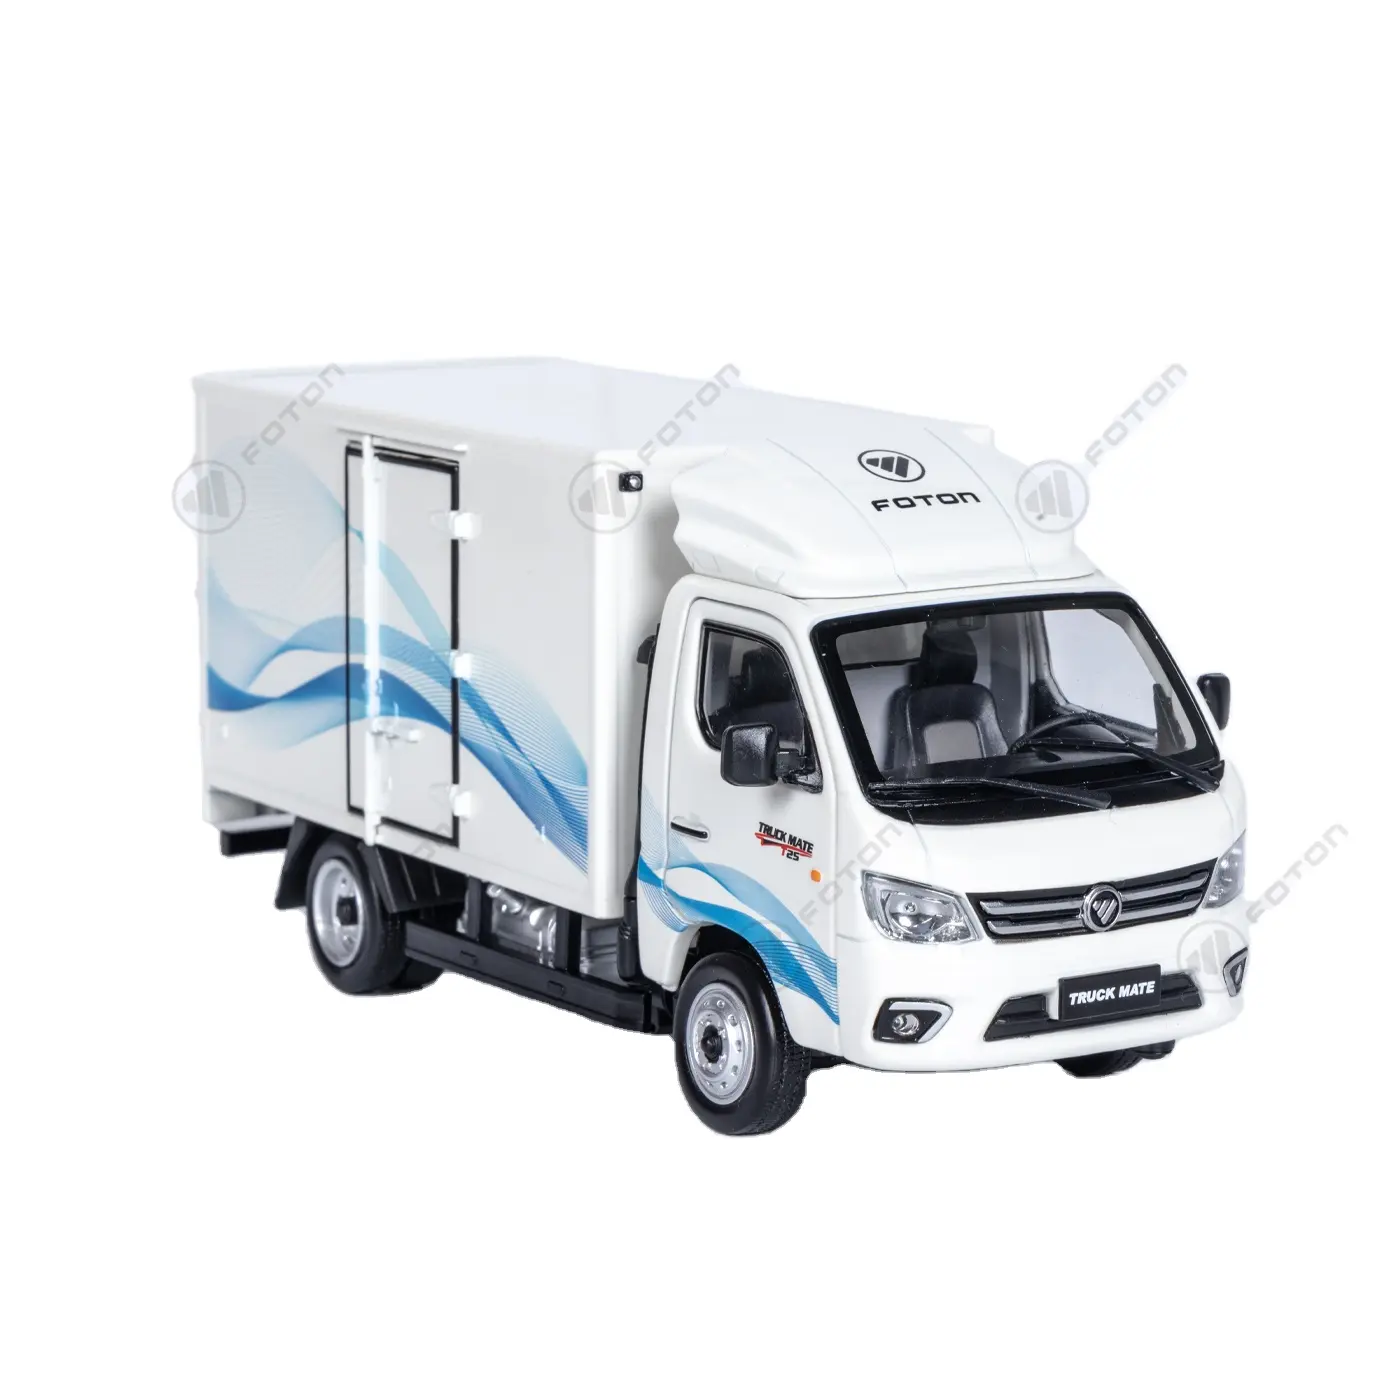 Foton грузовик Mate мини-грузовик масштабная модель автомобиля Рекламные Подарки товары для корпоративных AM701XL003